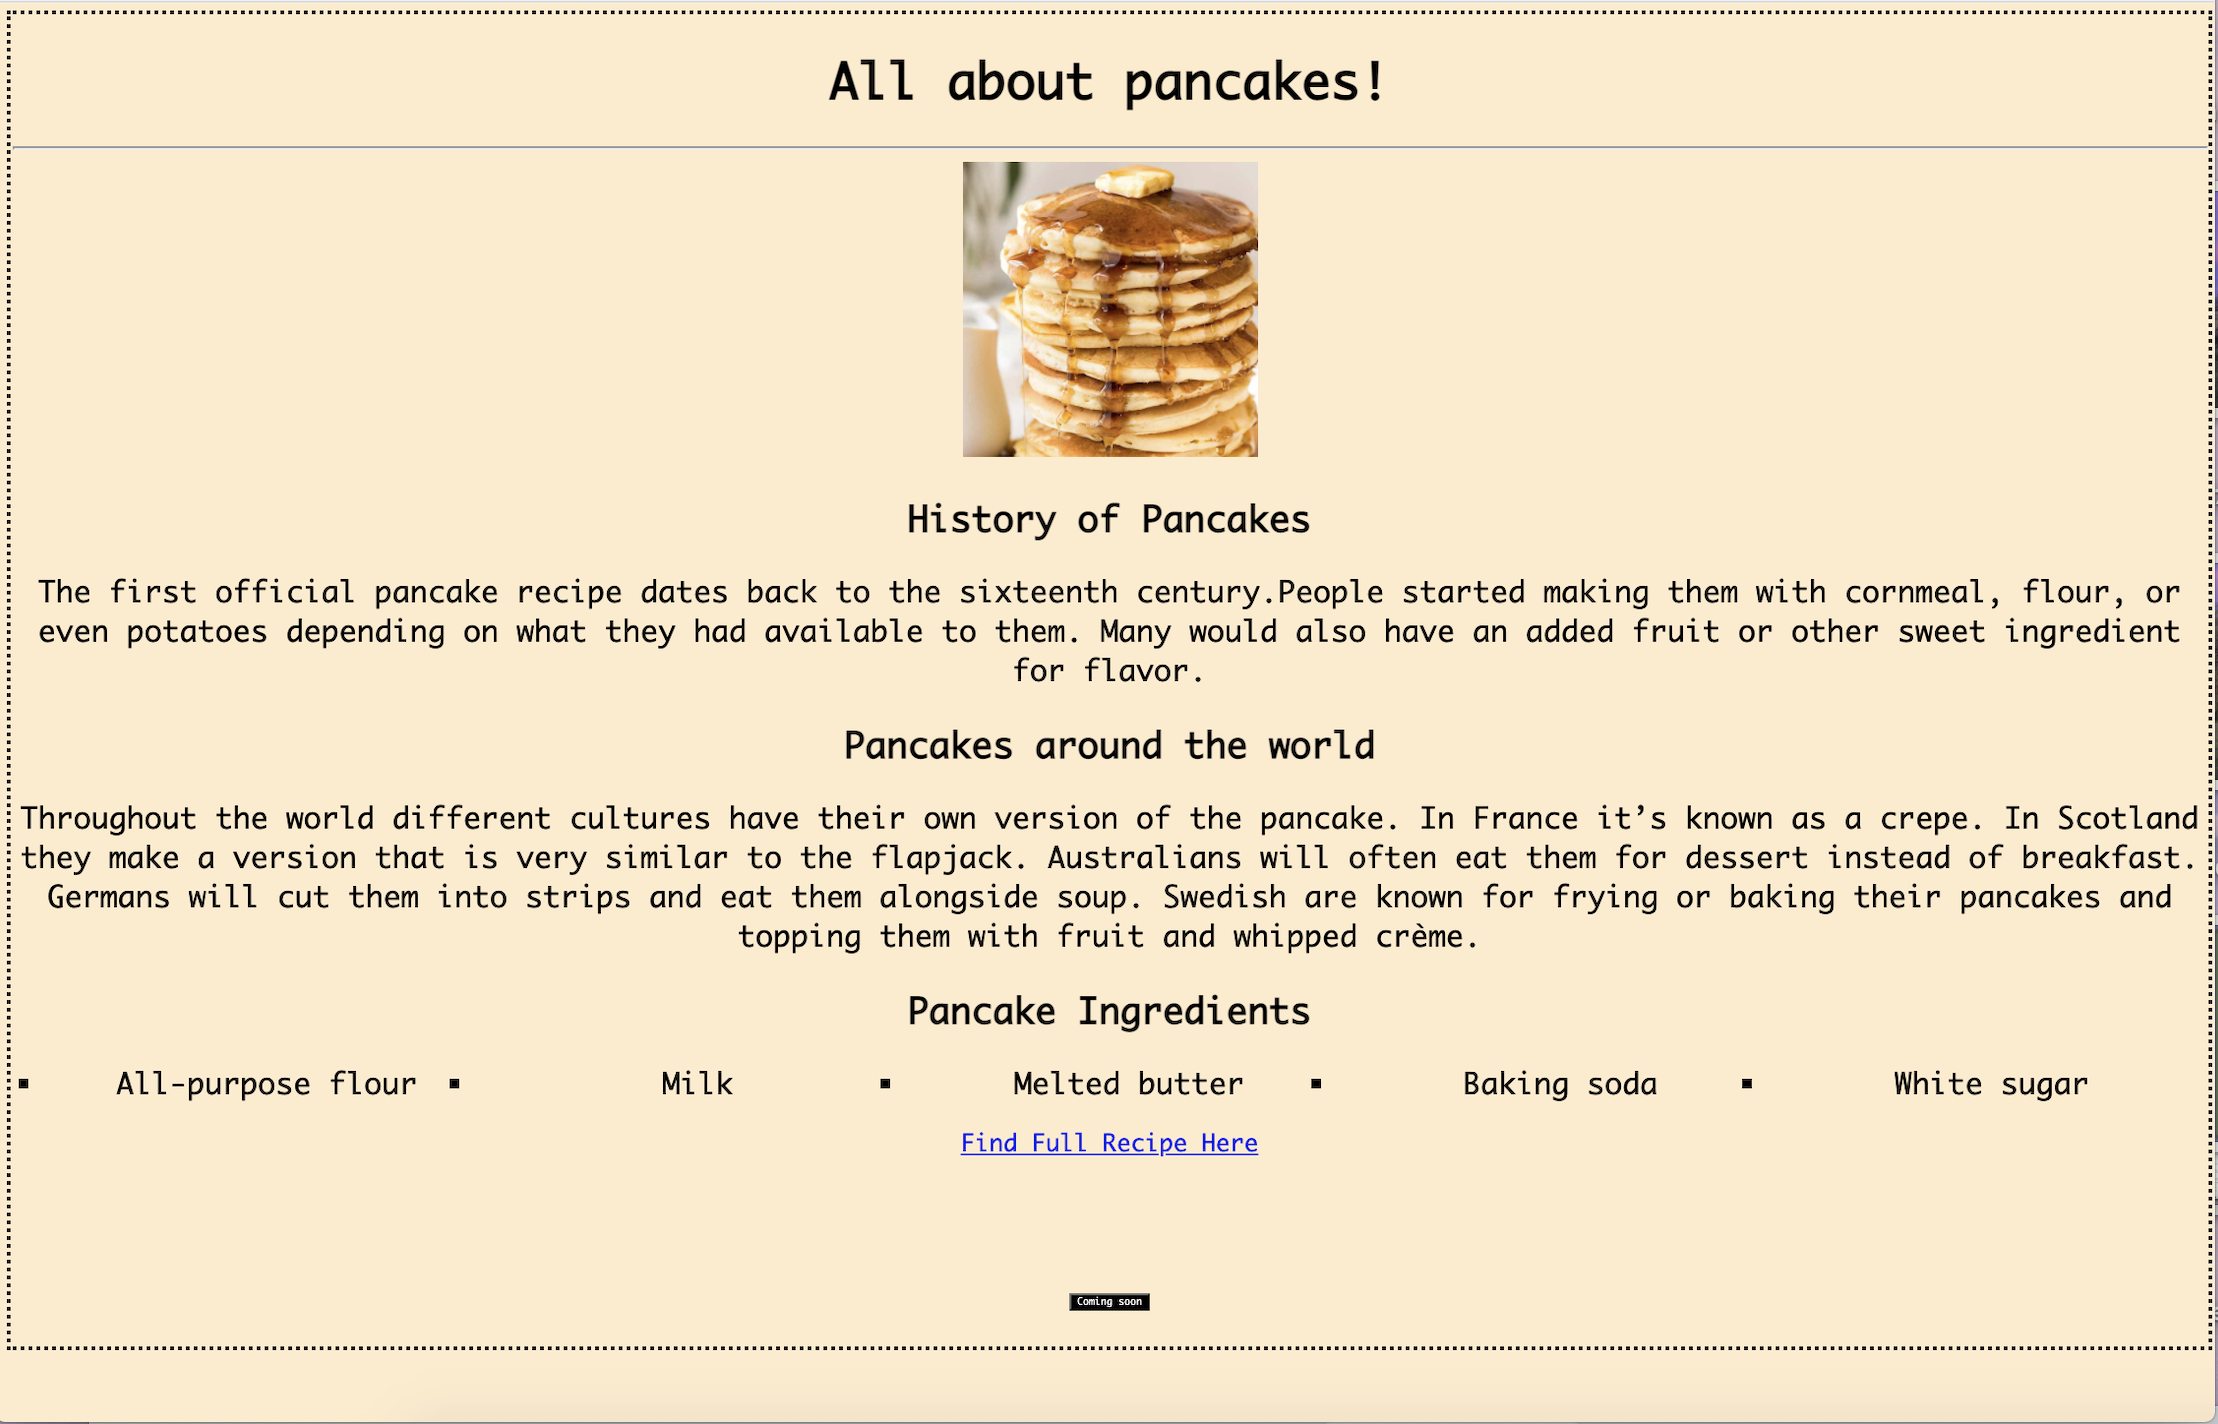 https://cloud-ddy4ohme0-hack-club-bot.vercel.app/0website-pancakes.png